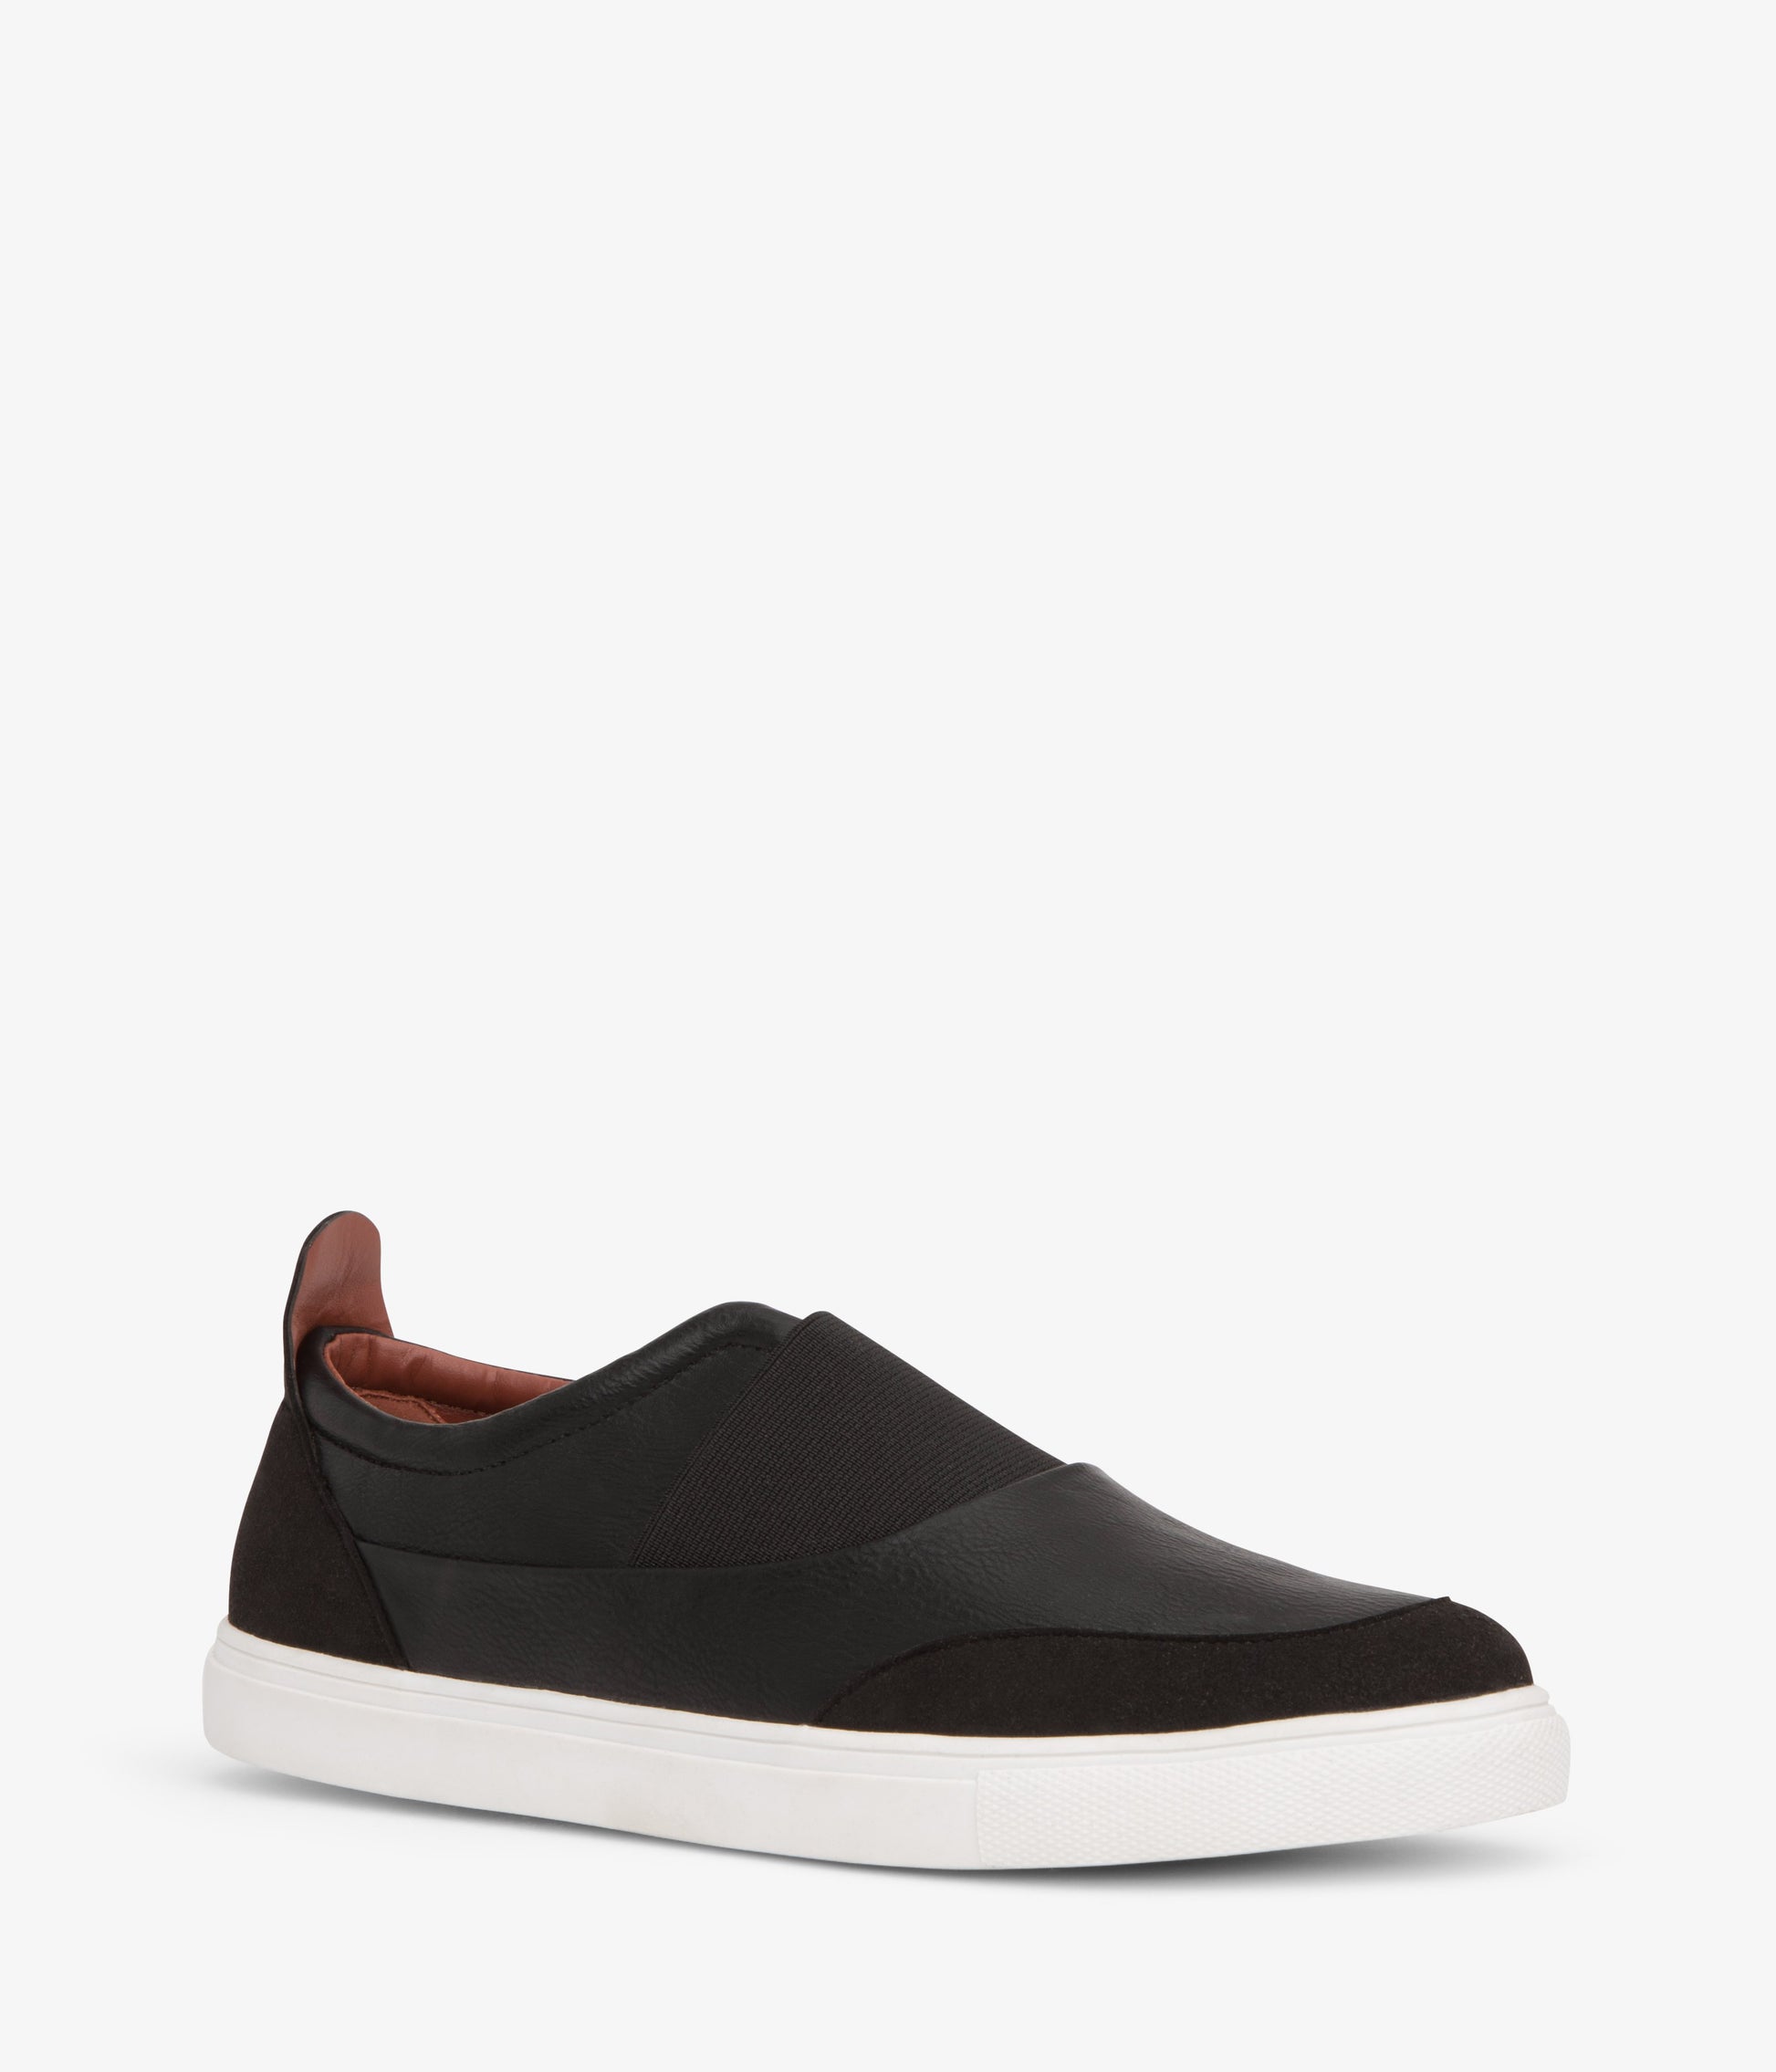 variant::noir --lucas shoe noir